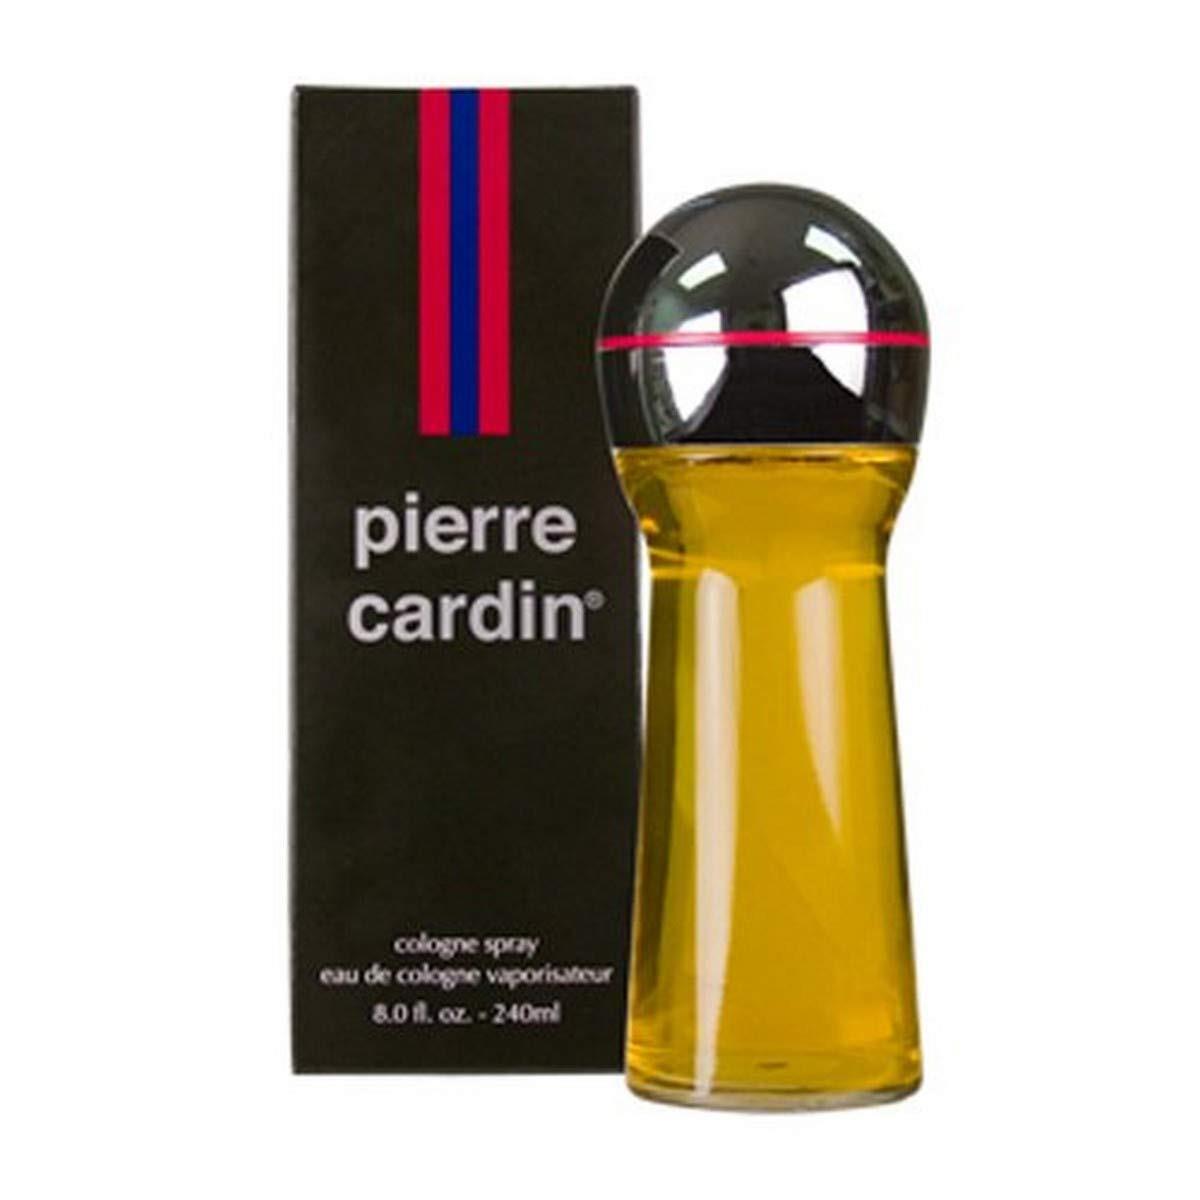 Pierre Cardin Eau De Cologne Spray - Recommended For Romantic Wear 8 oz